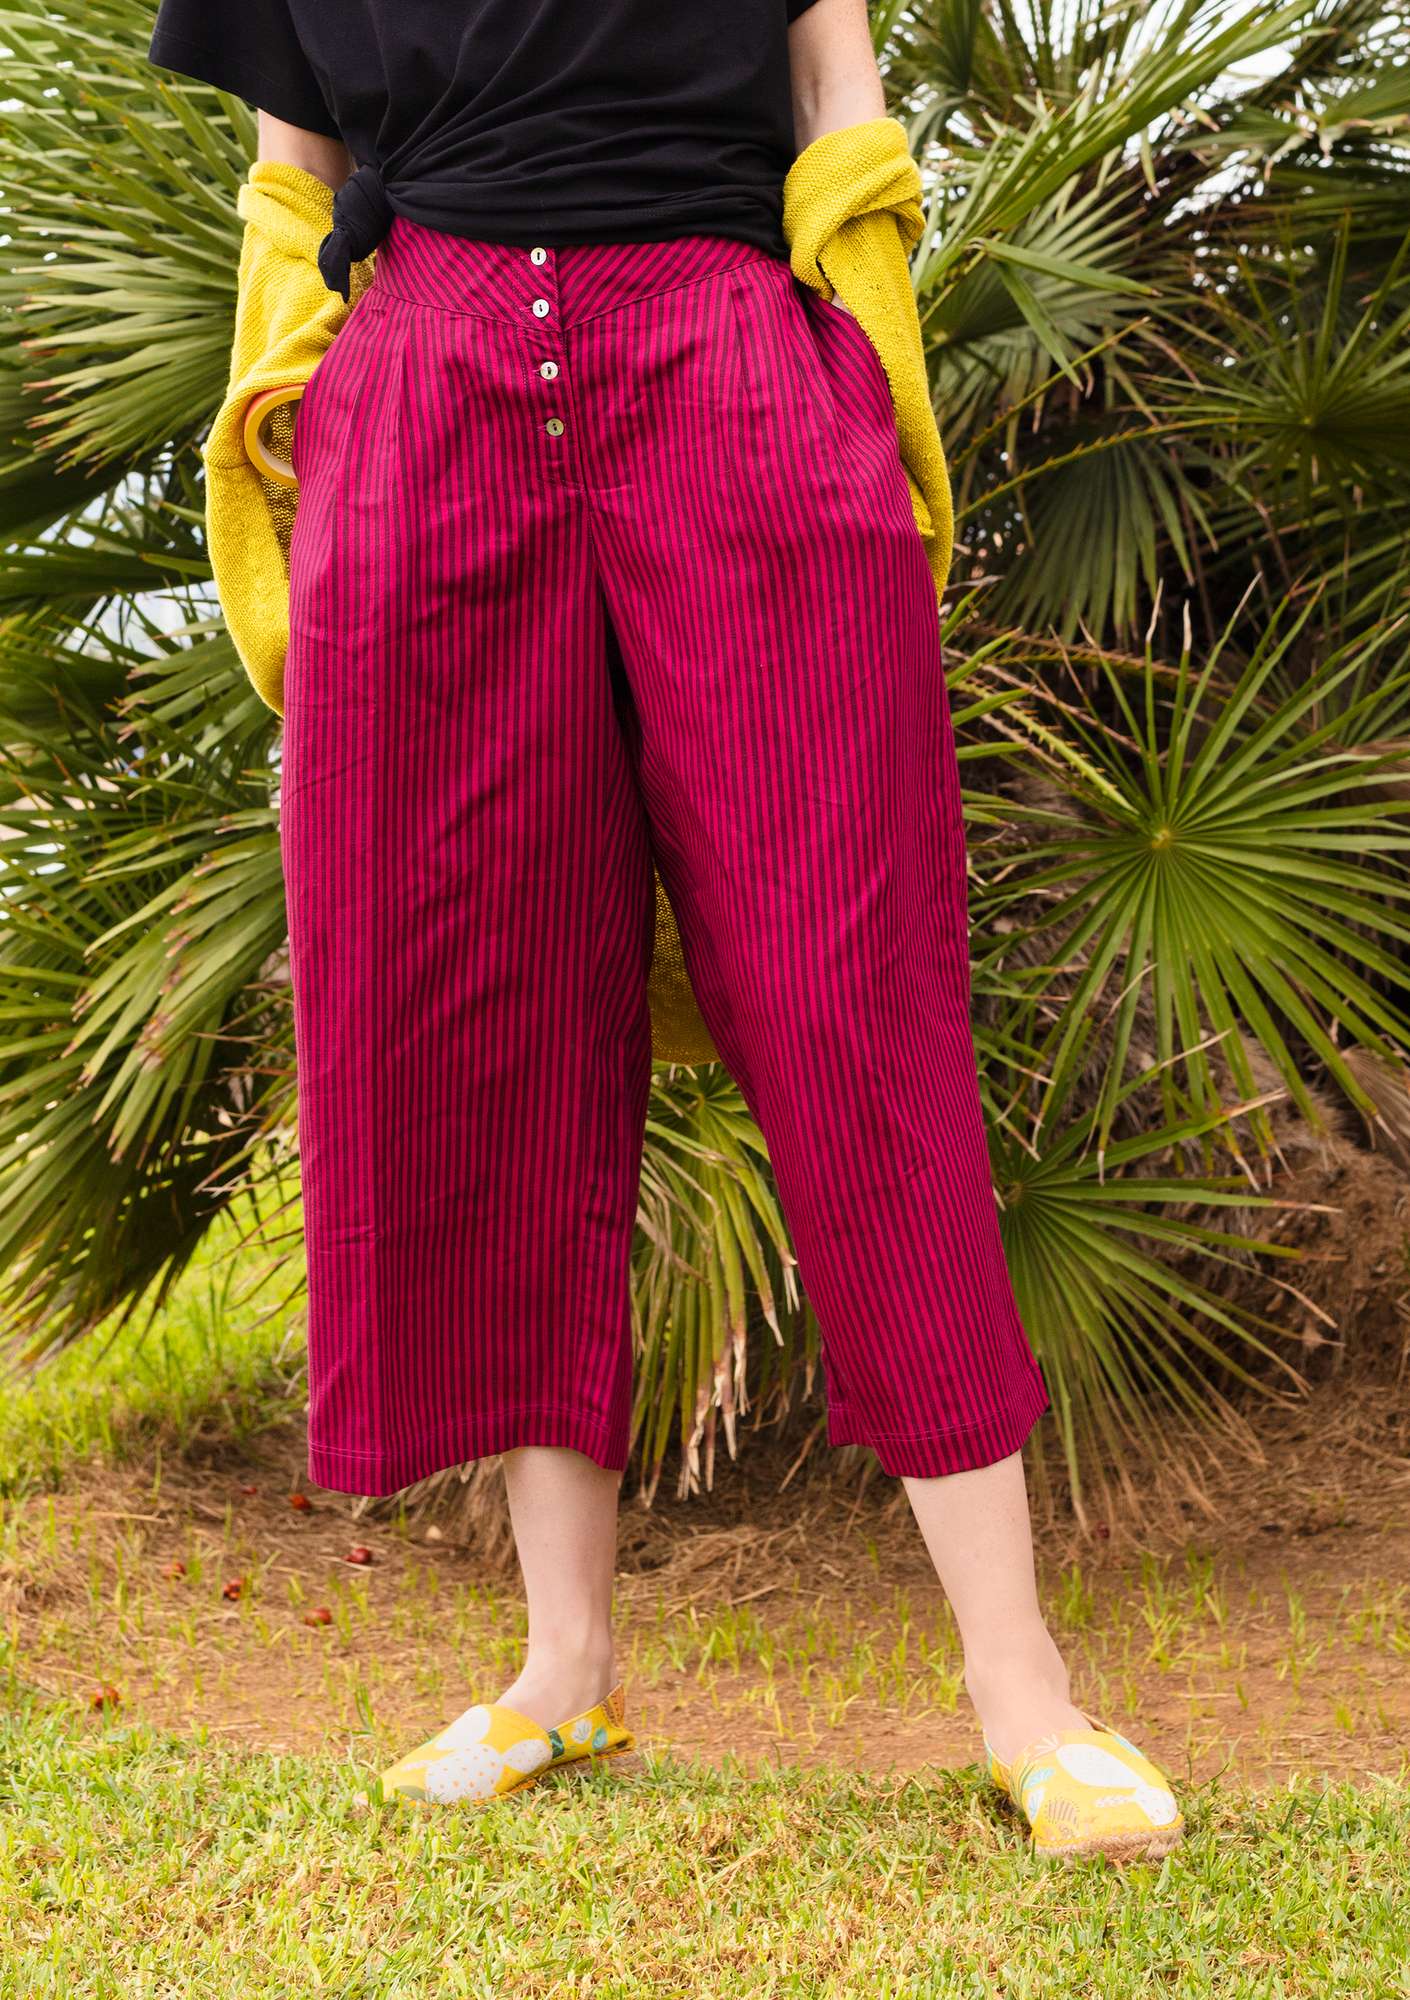 Pantalon finement rayé en lyocell/lin dark hibiscus